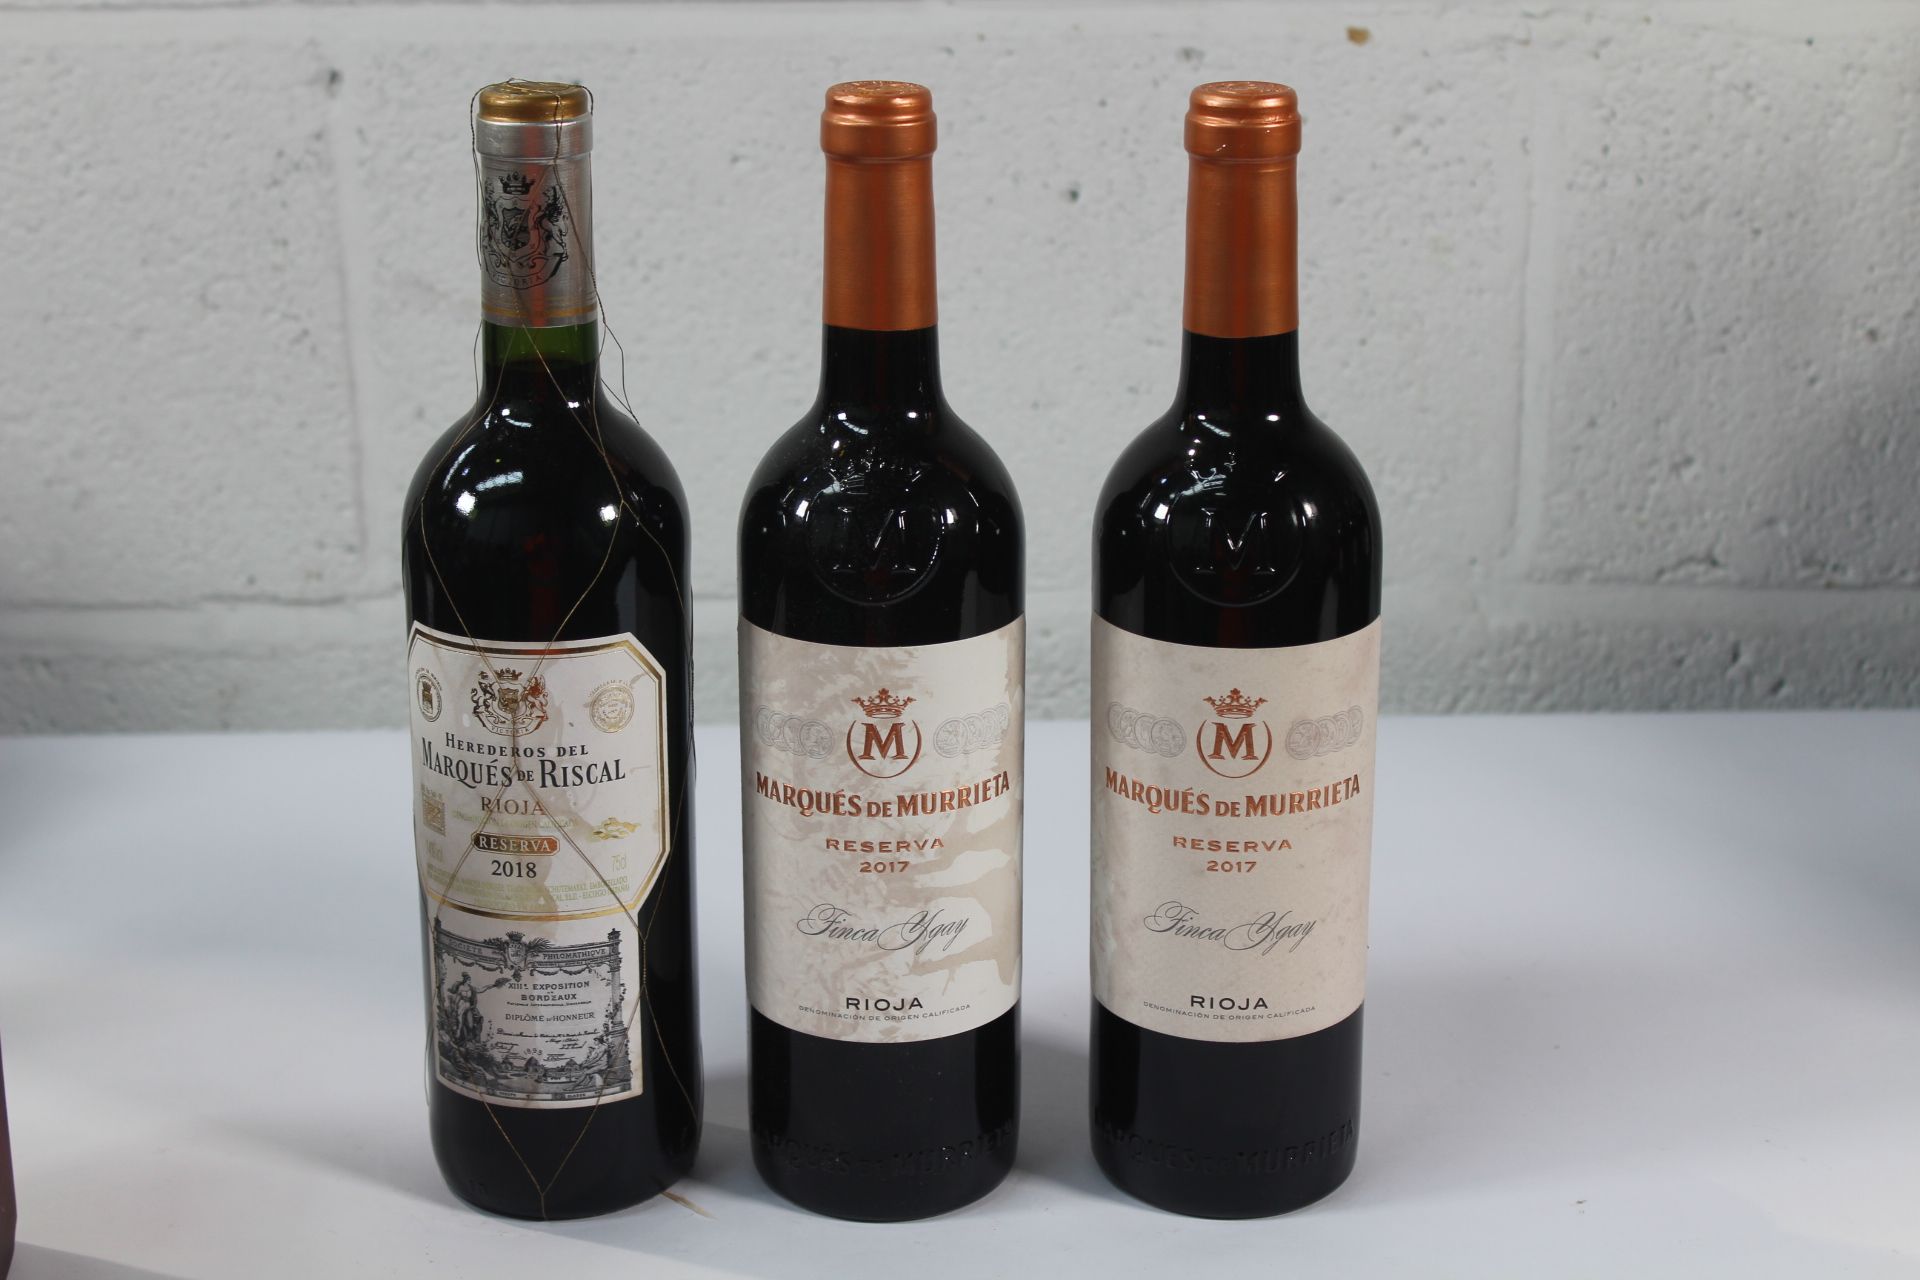 Two Marques De Murrieta Rioja Reserva 2017 Red Wines 2 x 750ml and a Marques De Riscal Rioja Reserva